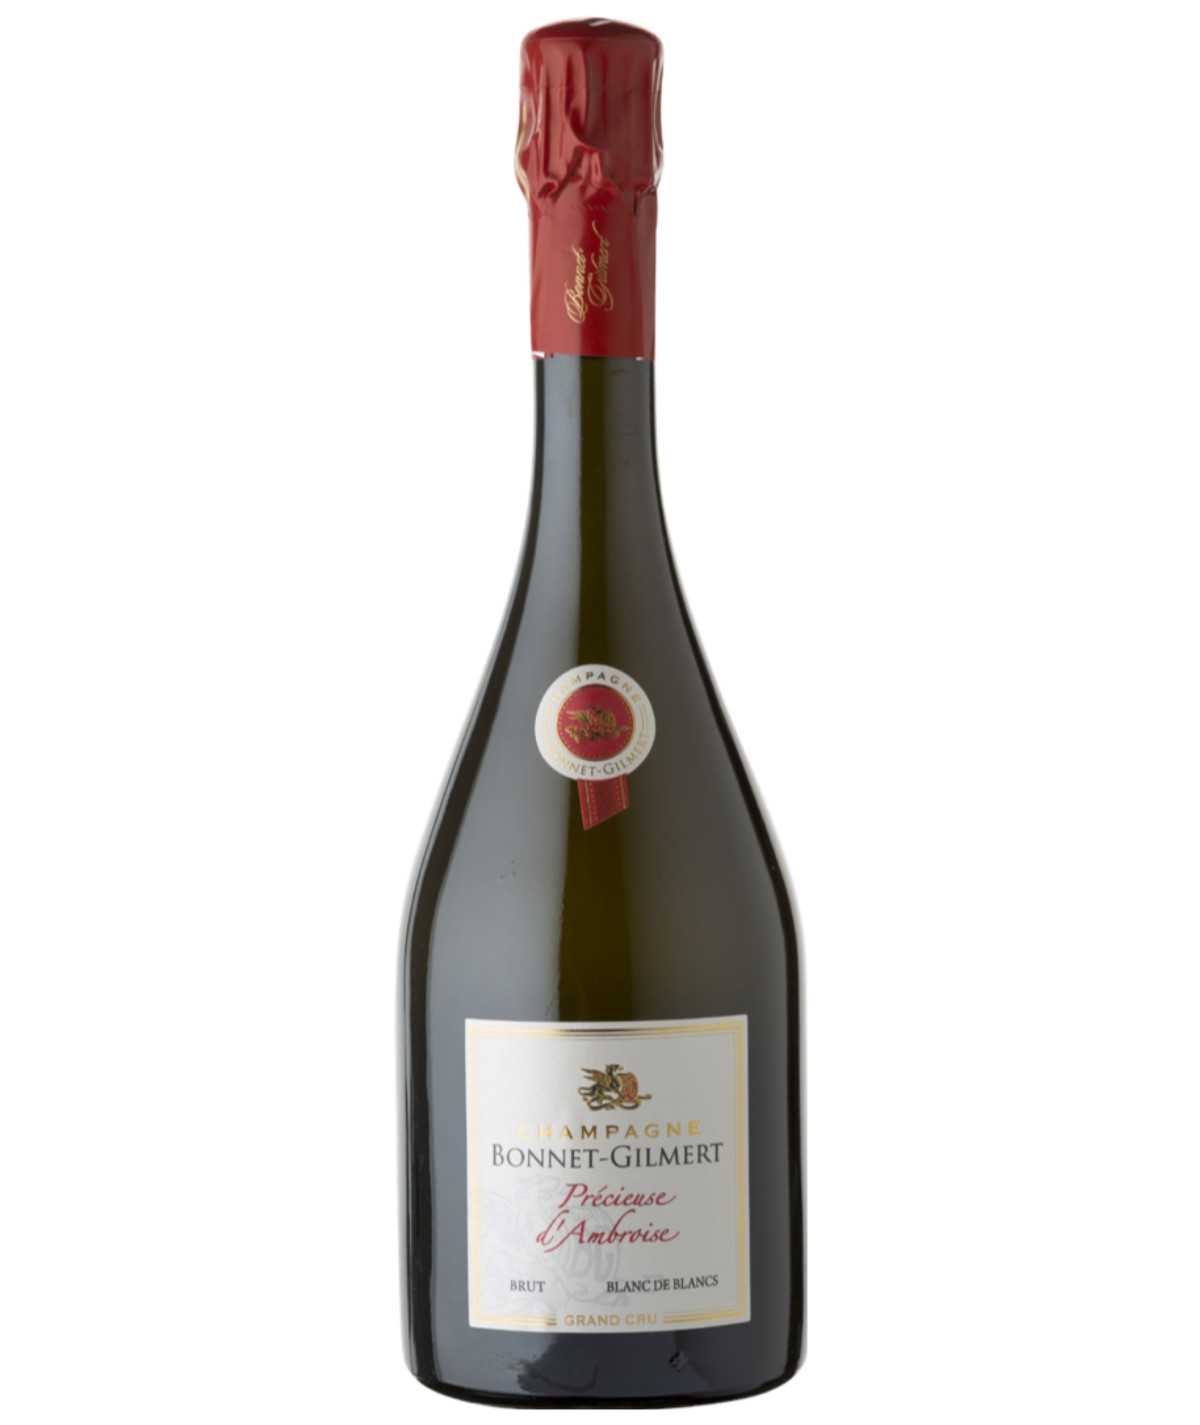 BONNET-GILMERT champagne Précieuse D’ambroise Grand Cru